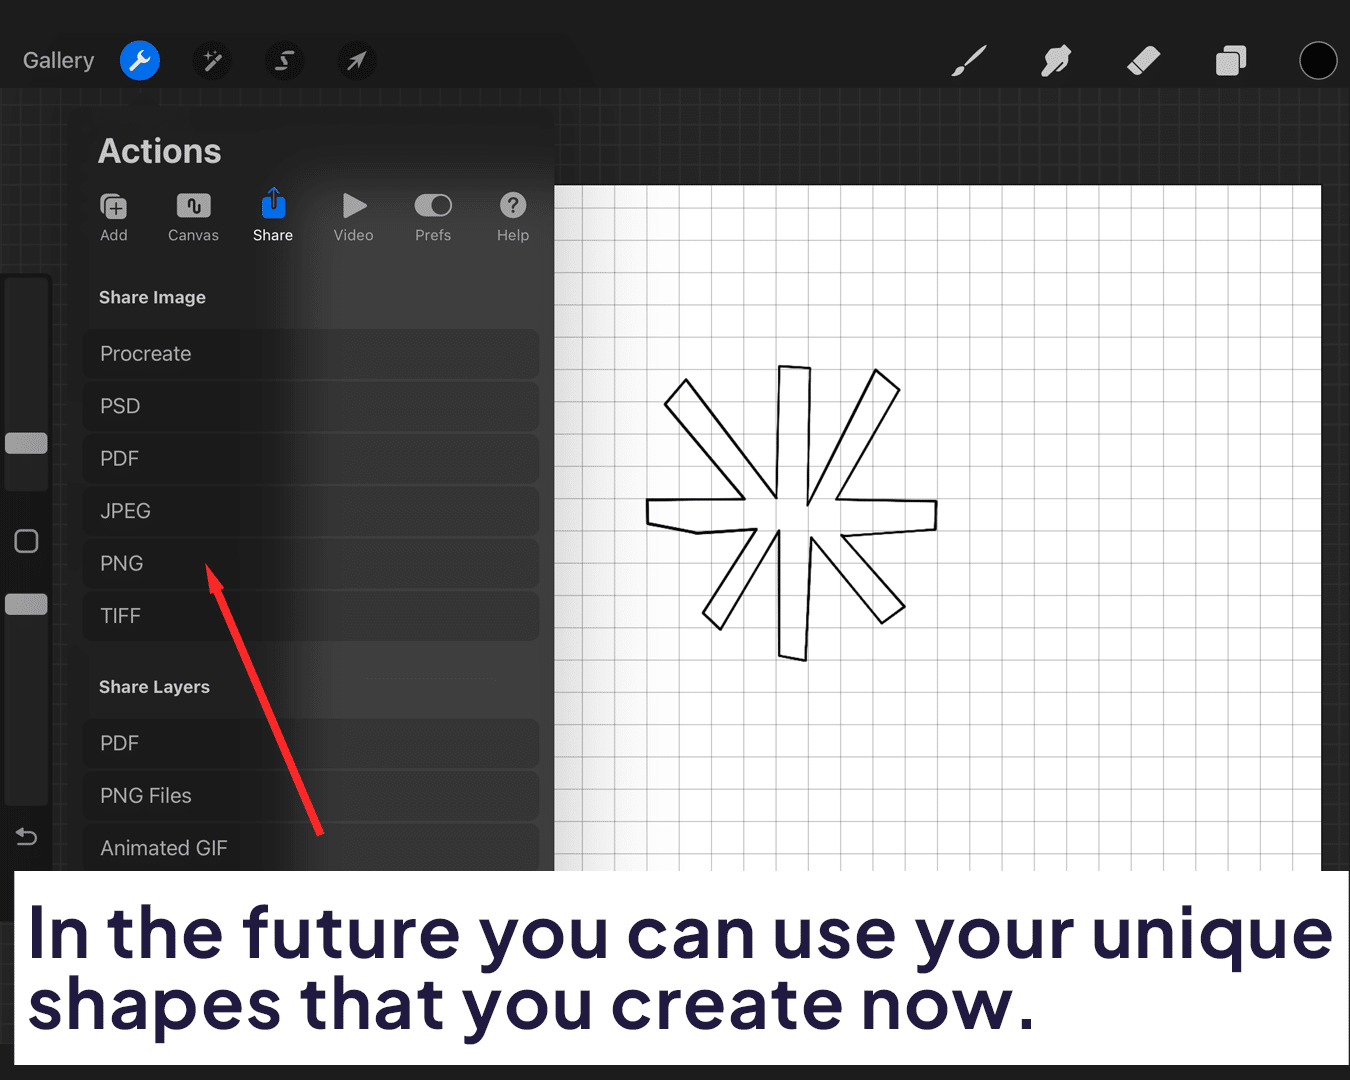 Using your unique shapes